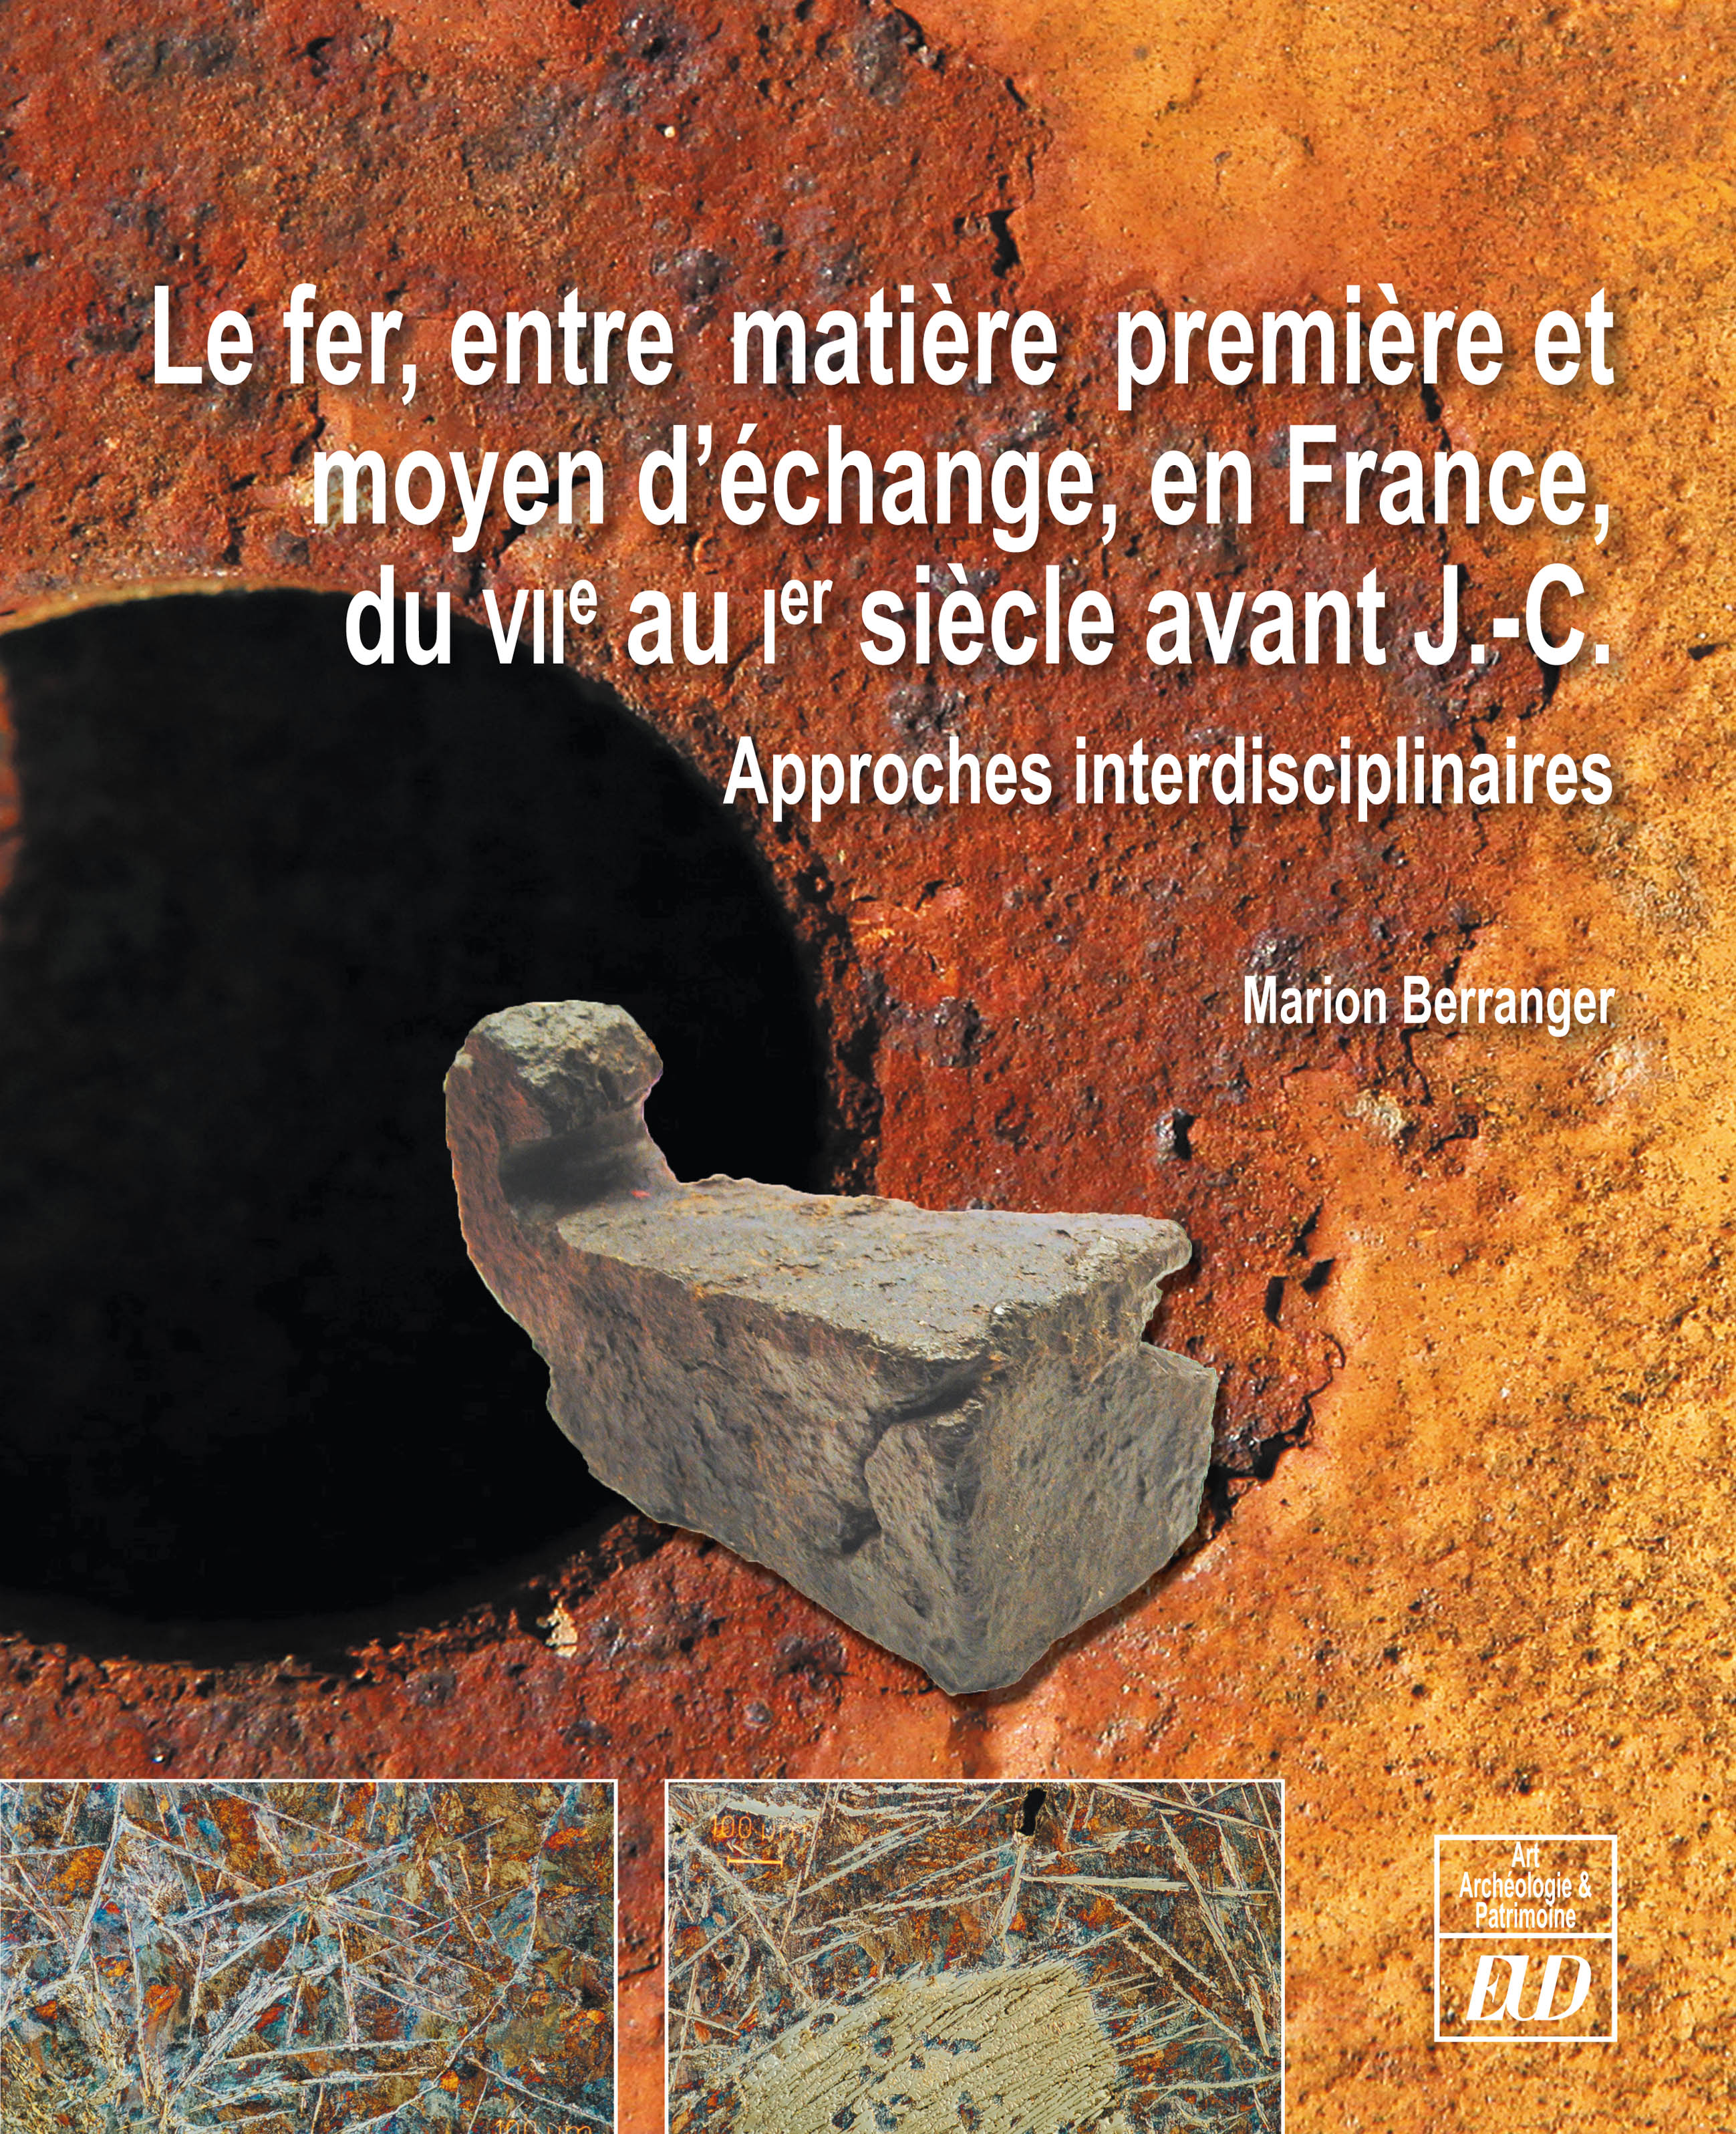 Le fer, entre matière première et moyen d'échange, en France, du VIIe au Ier siècle avant J.-C. Approches pluridisciplinaires, 2014, 410 p., ill. n.b. et coul.